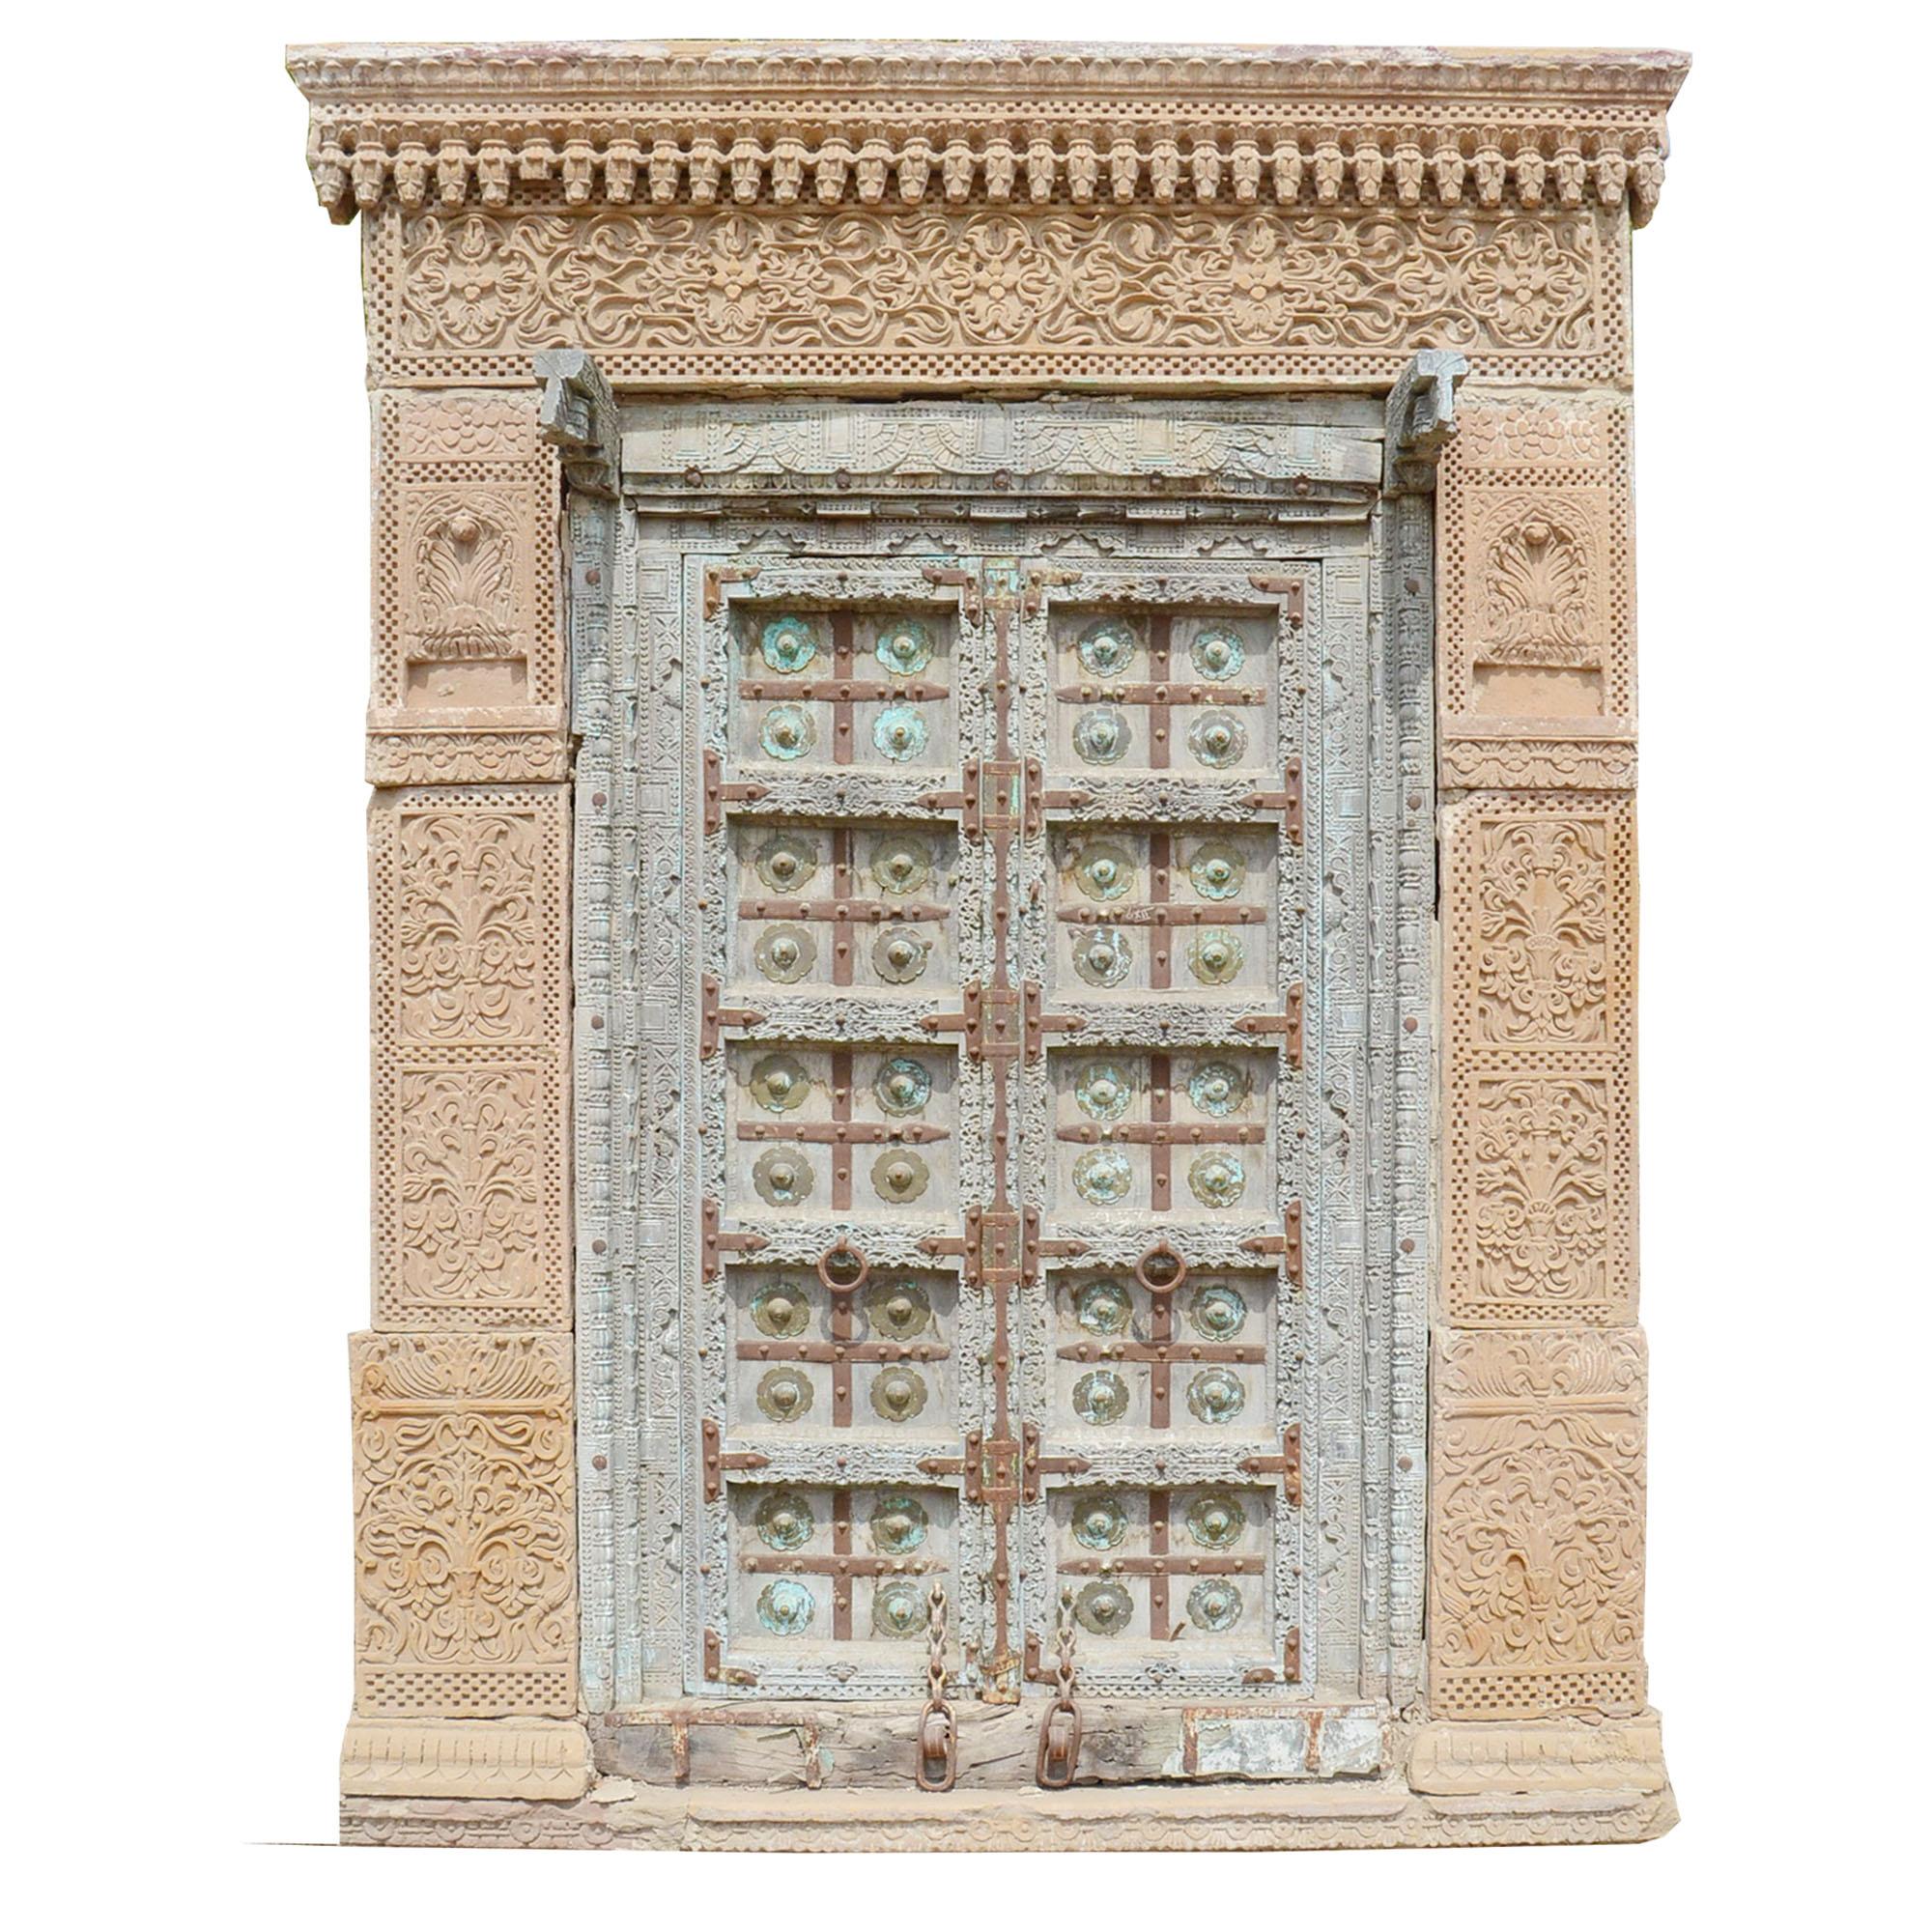 Antike Tür aus Rajasthan #eingang ©Guru-Shop